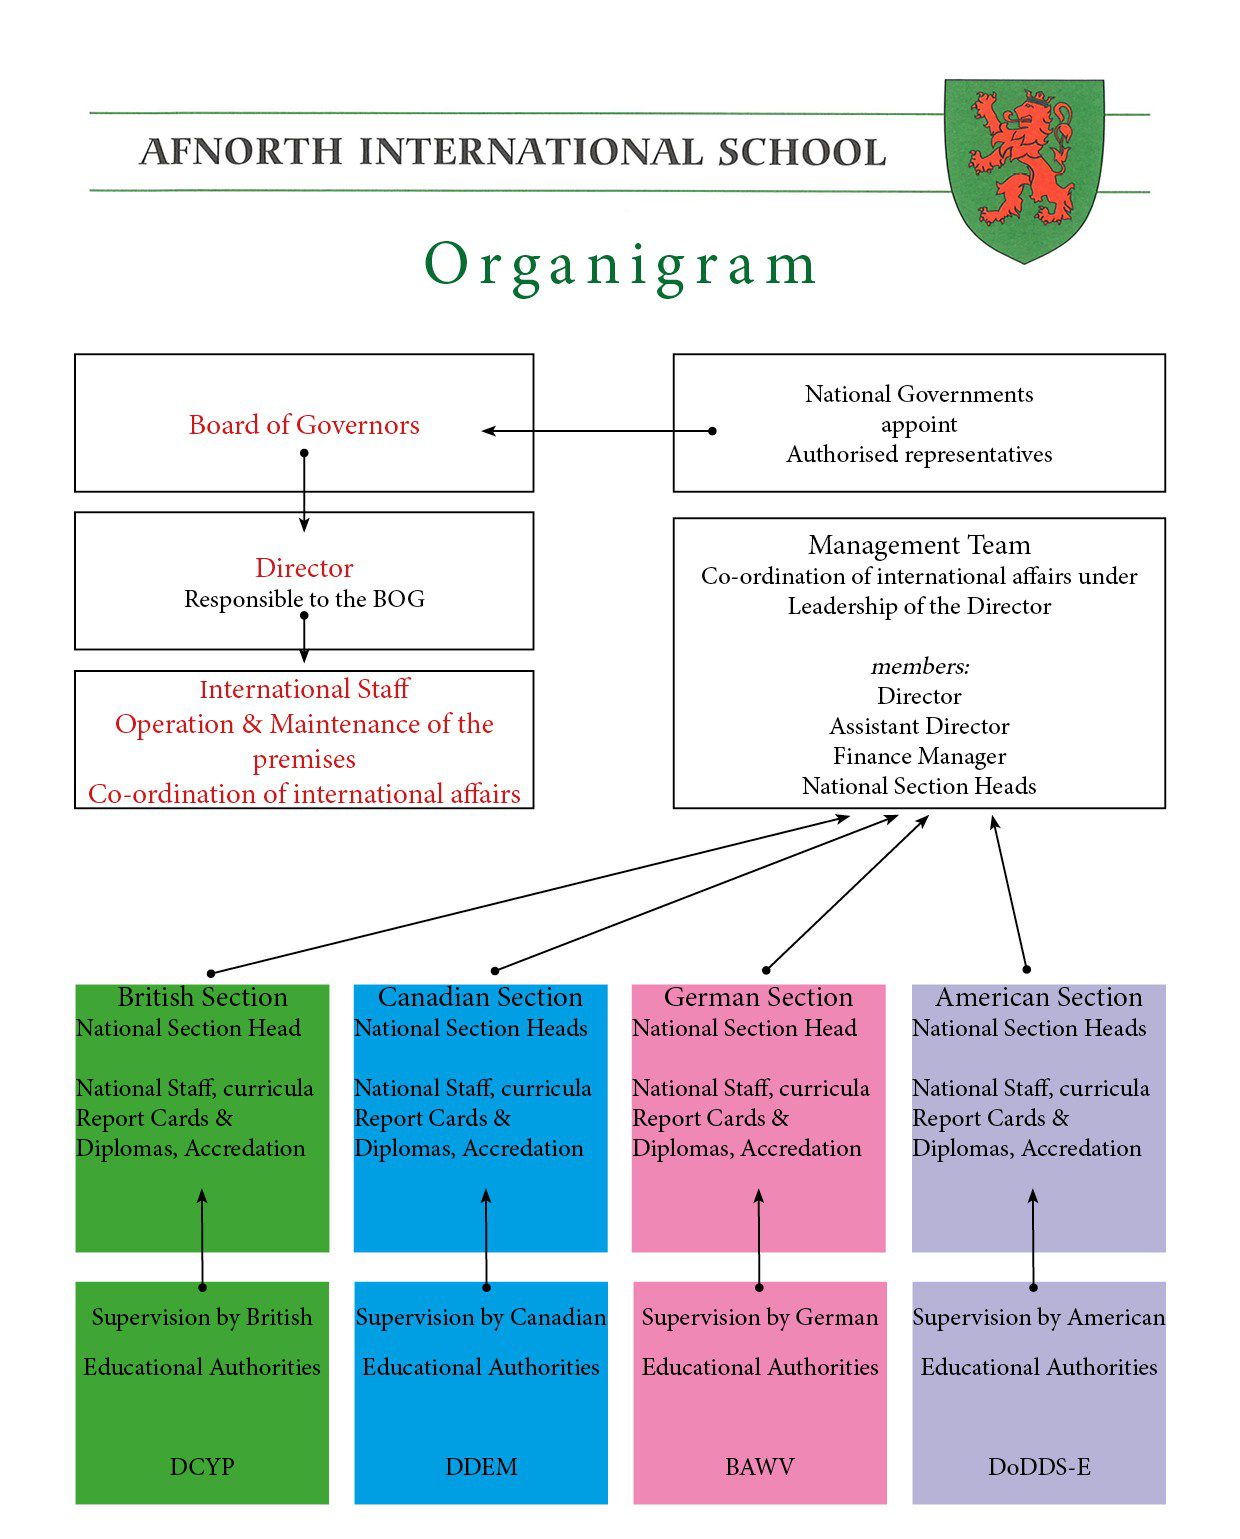 Organigram of AFNORTH International School